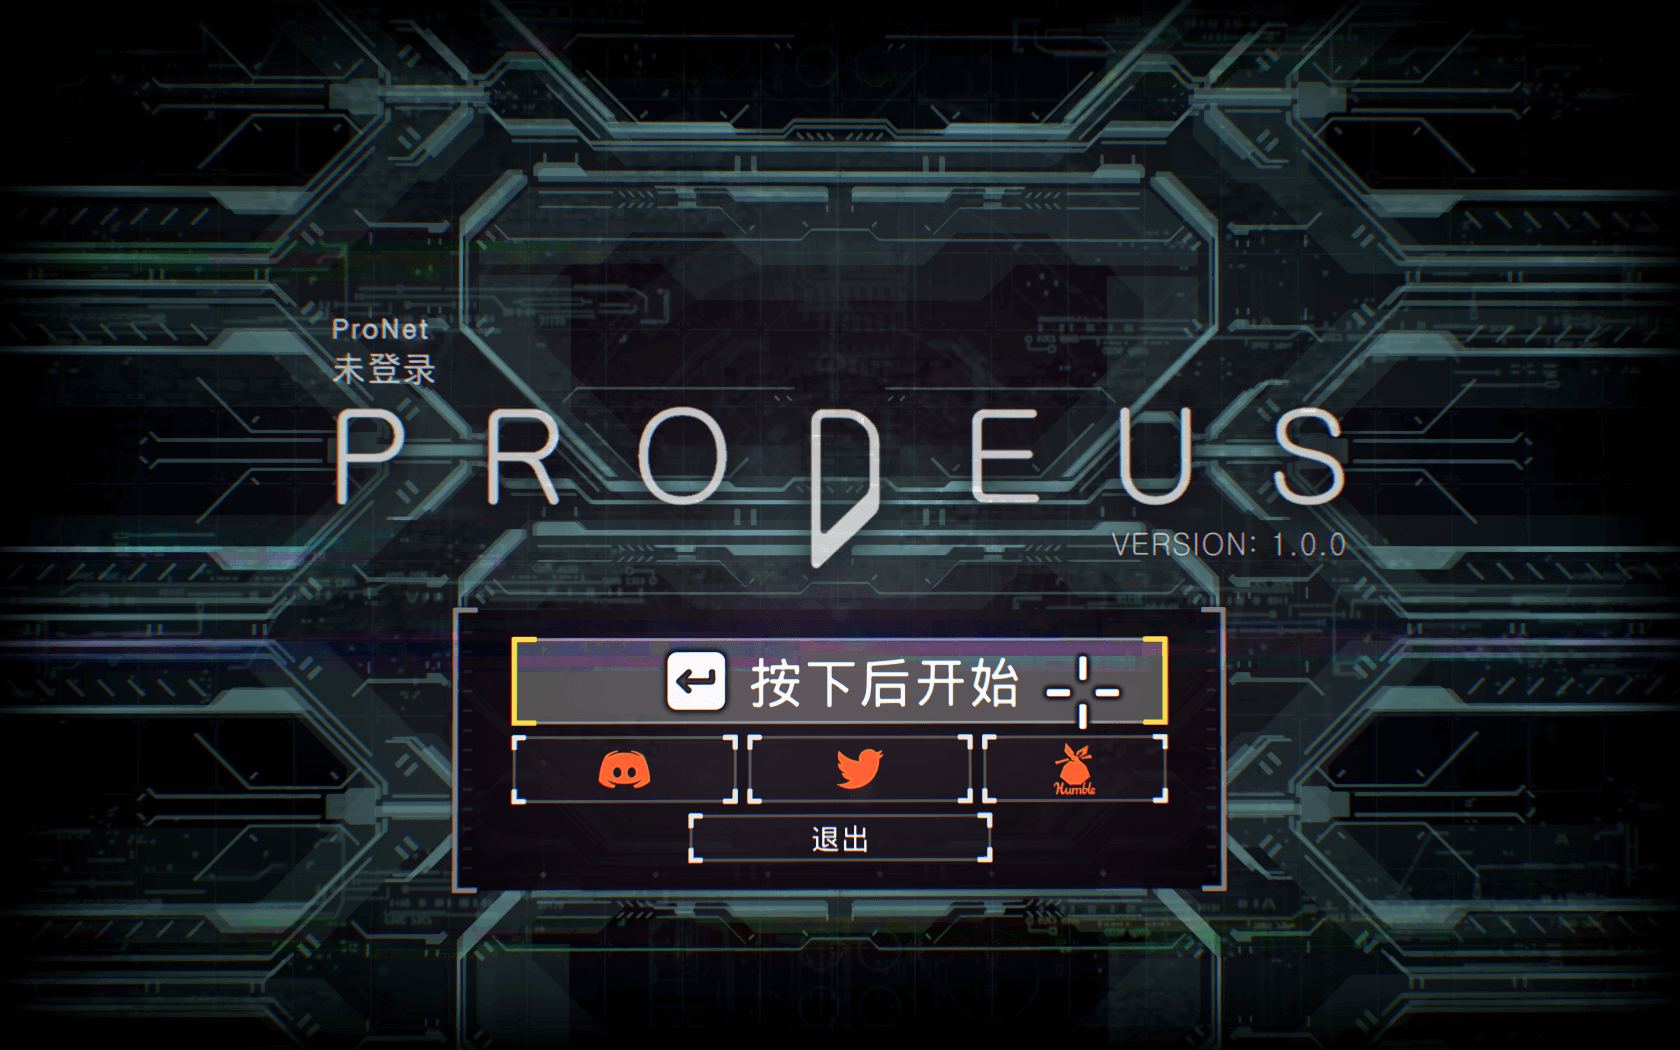 前卫 for Mac v1.0.5a Prodeus 中文原生版 苹果电脑